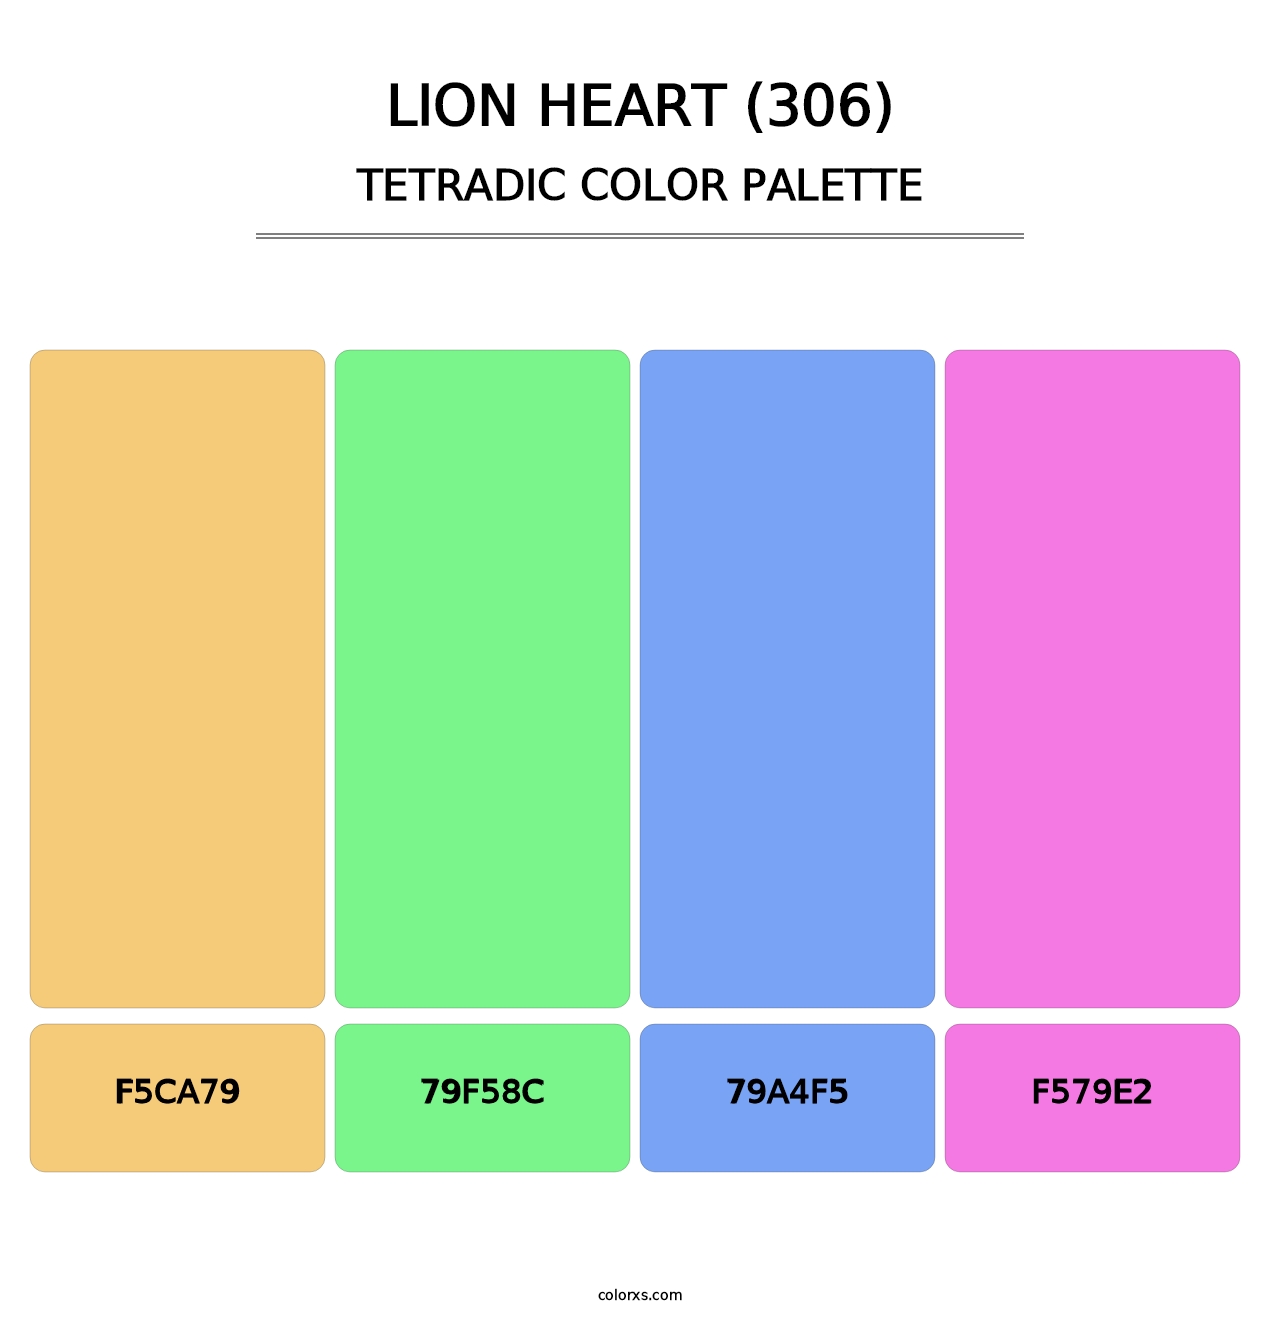 Lion Heart (306) - Tetradic Color Palette